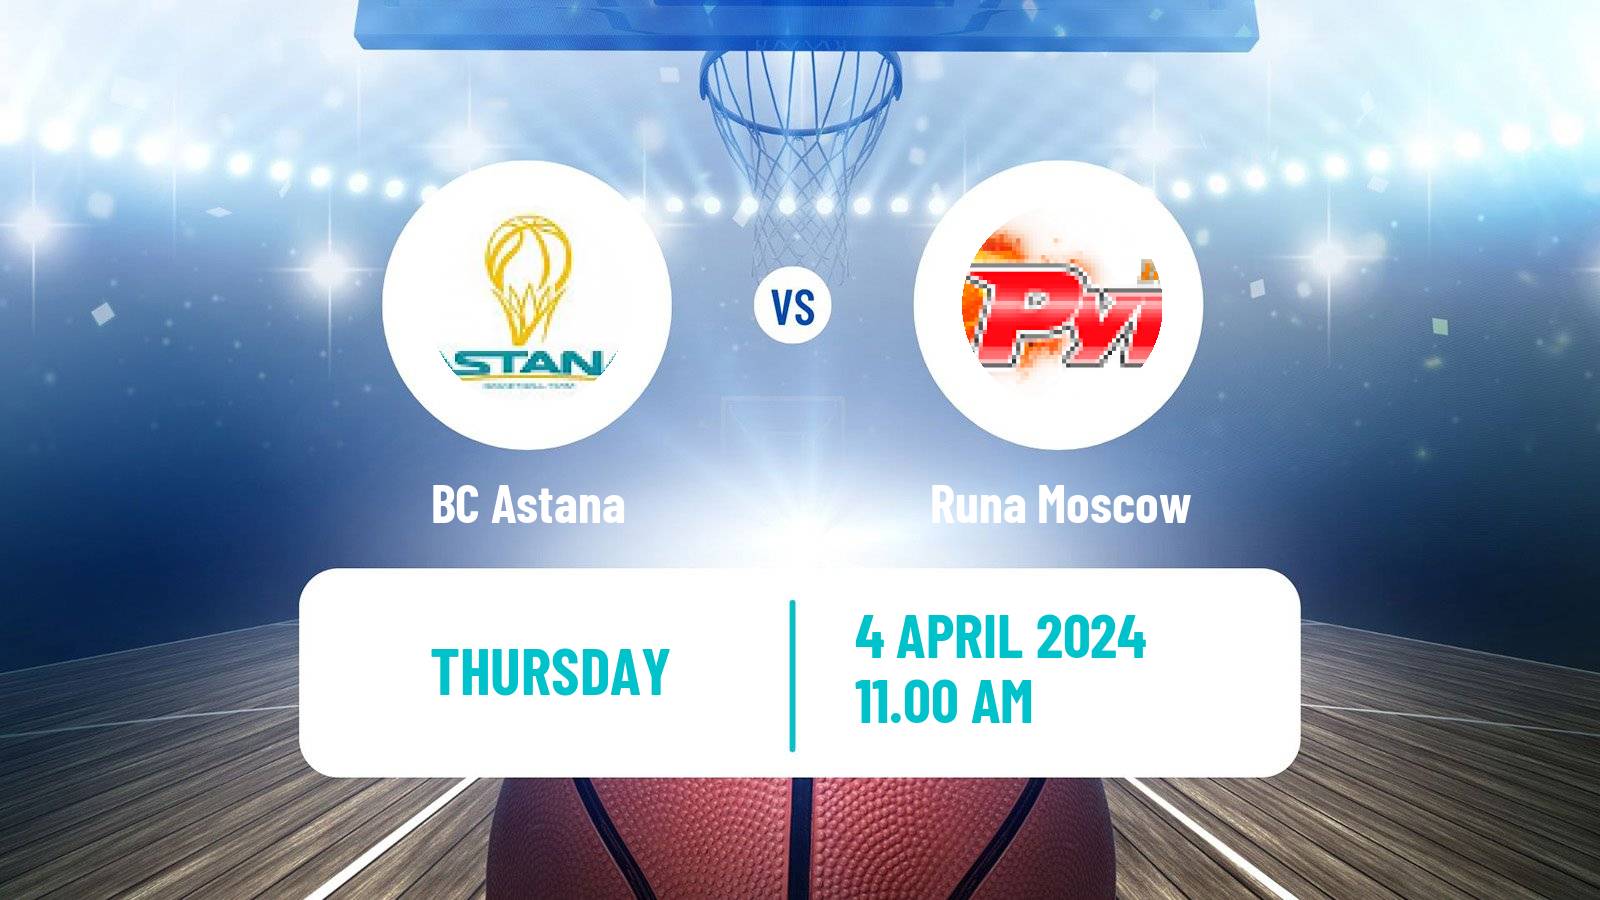 Basketball VTB United League Astana - Runa Moscow